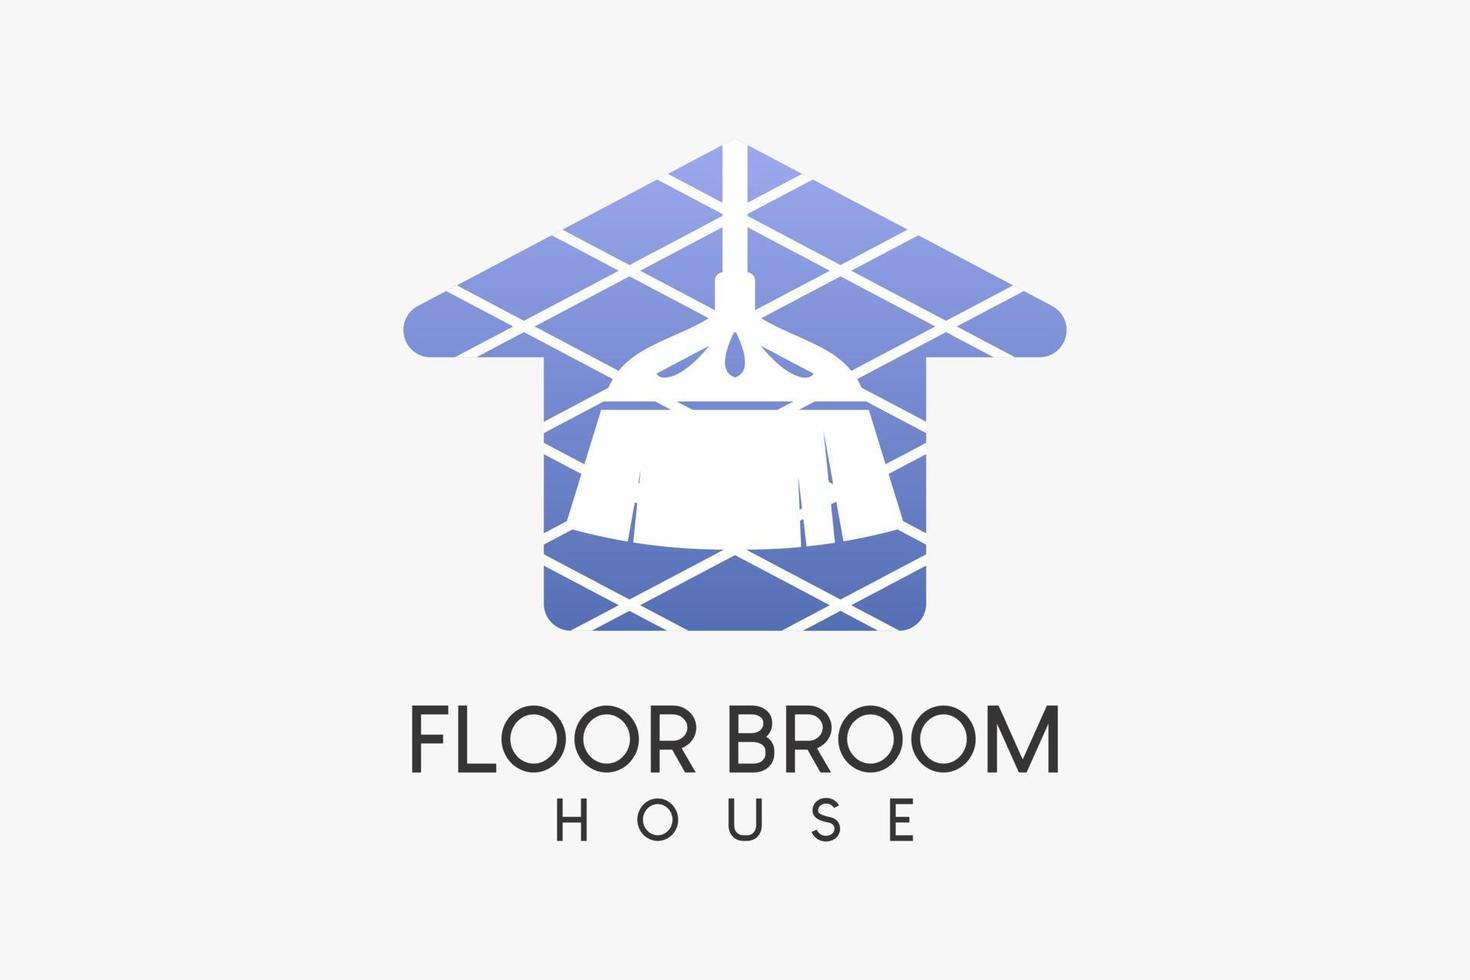 ein Bodenfeger-Logo oder Hausreinigungsdienst mit einem kreativen Konzept, eine Bodenbesen-Silhouette kombiniert mit einem gestreiften Haussymbol vektor